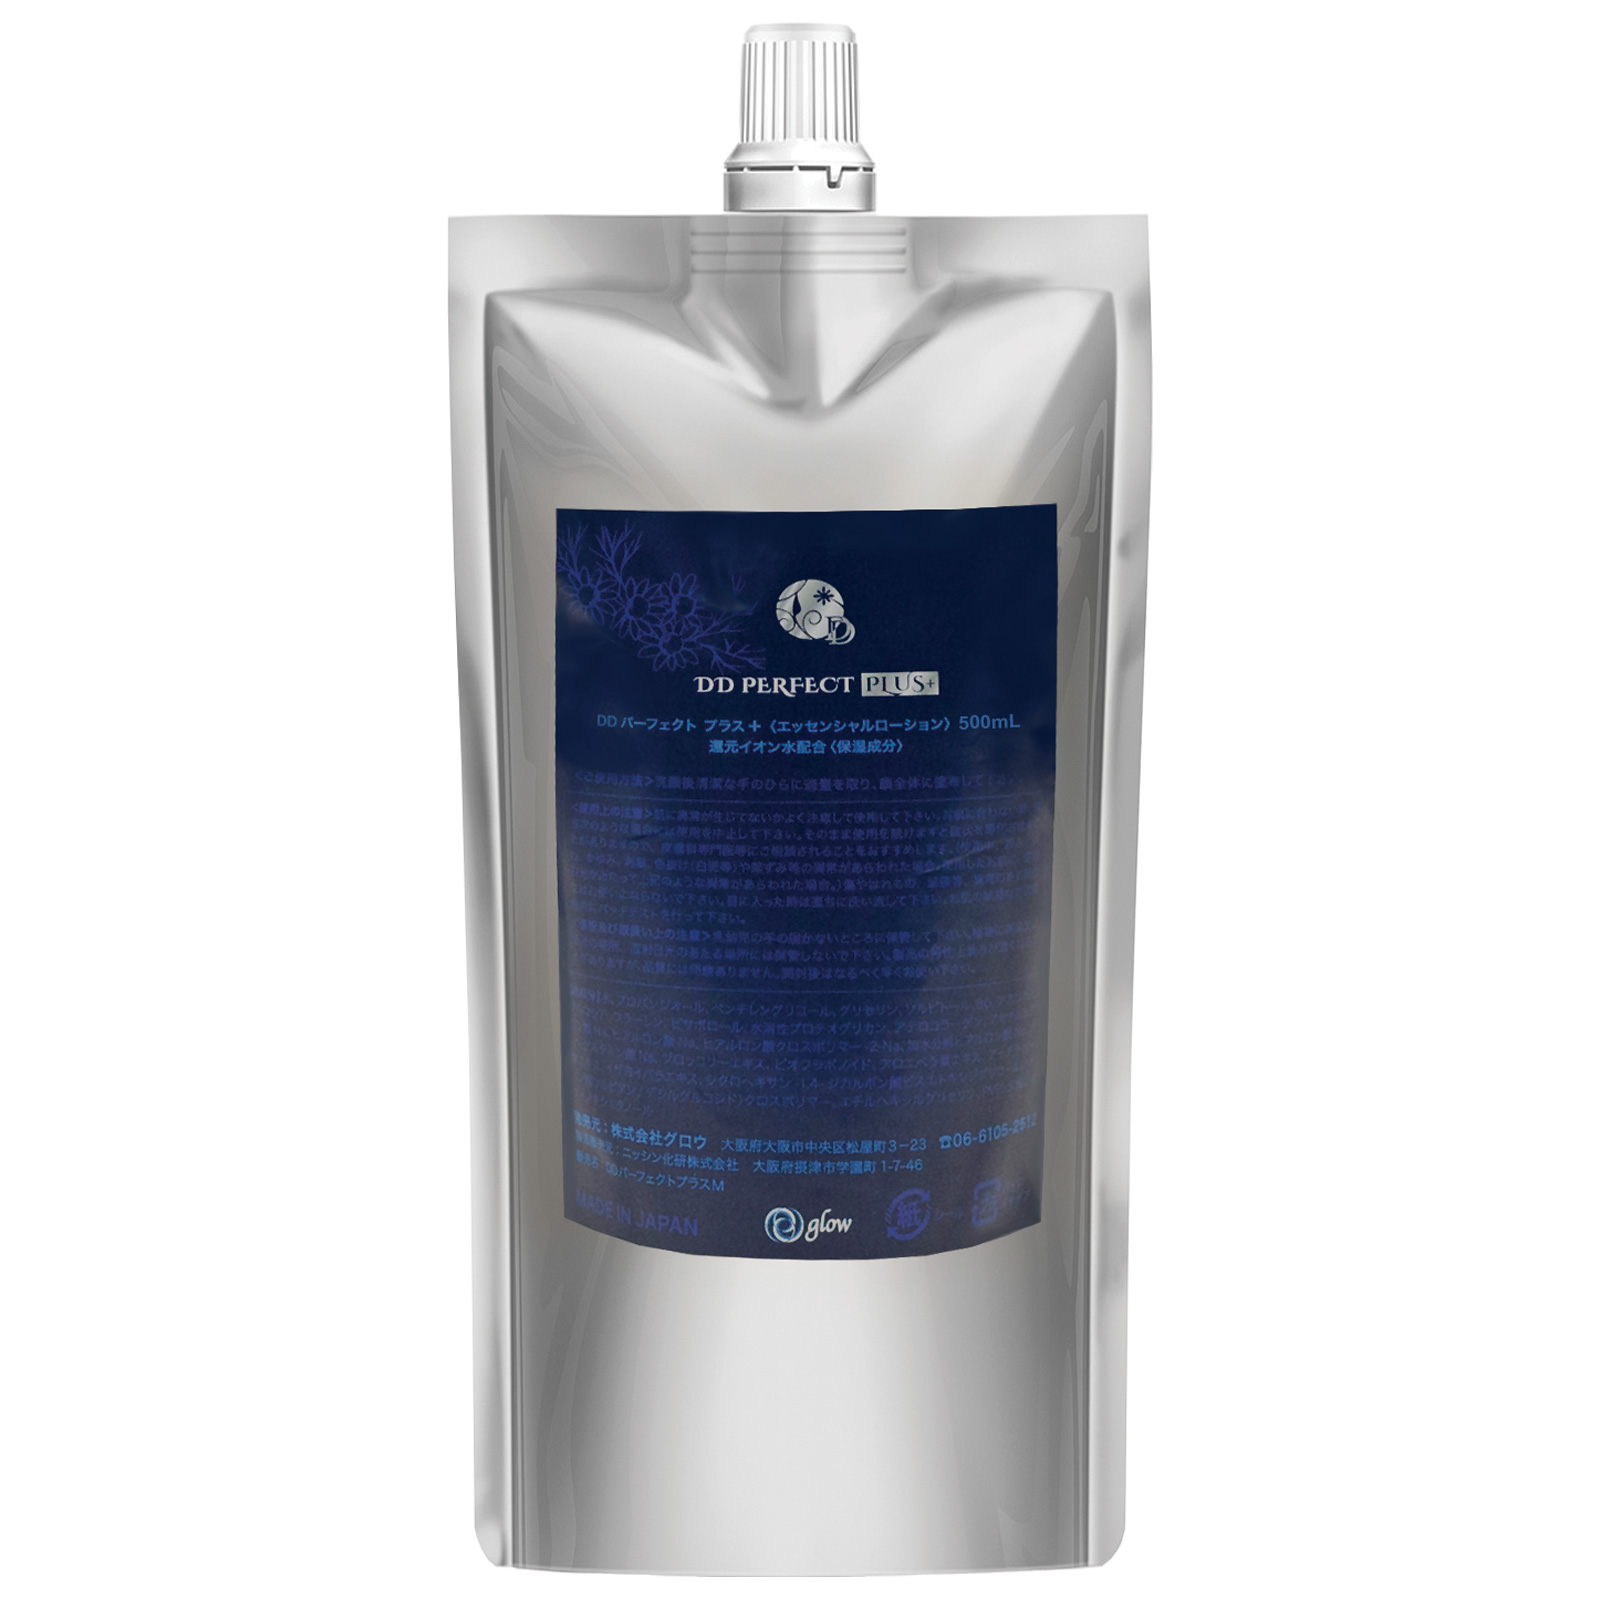 DD Perfect Plus Total Care Water. Увлажняющий лосьон для лица ДиДи Перфект Плюс на основе ионизированной воды G11, 500 мл